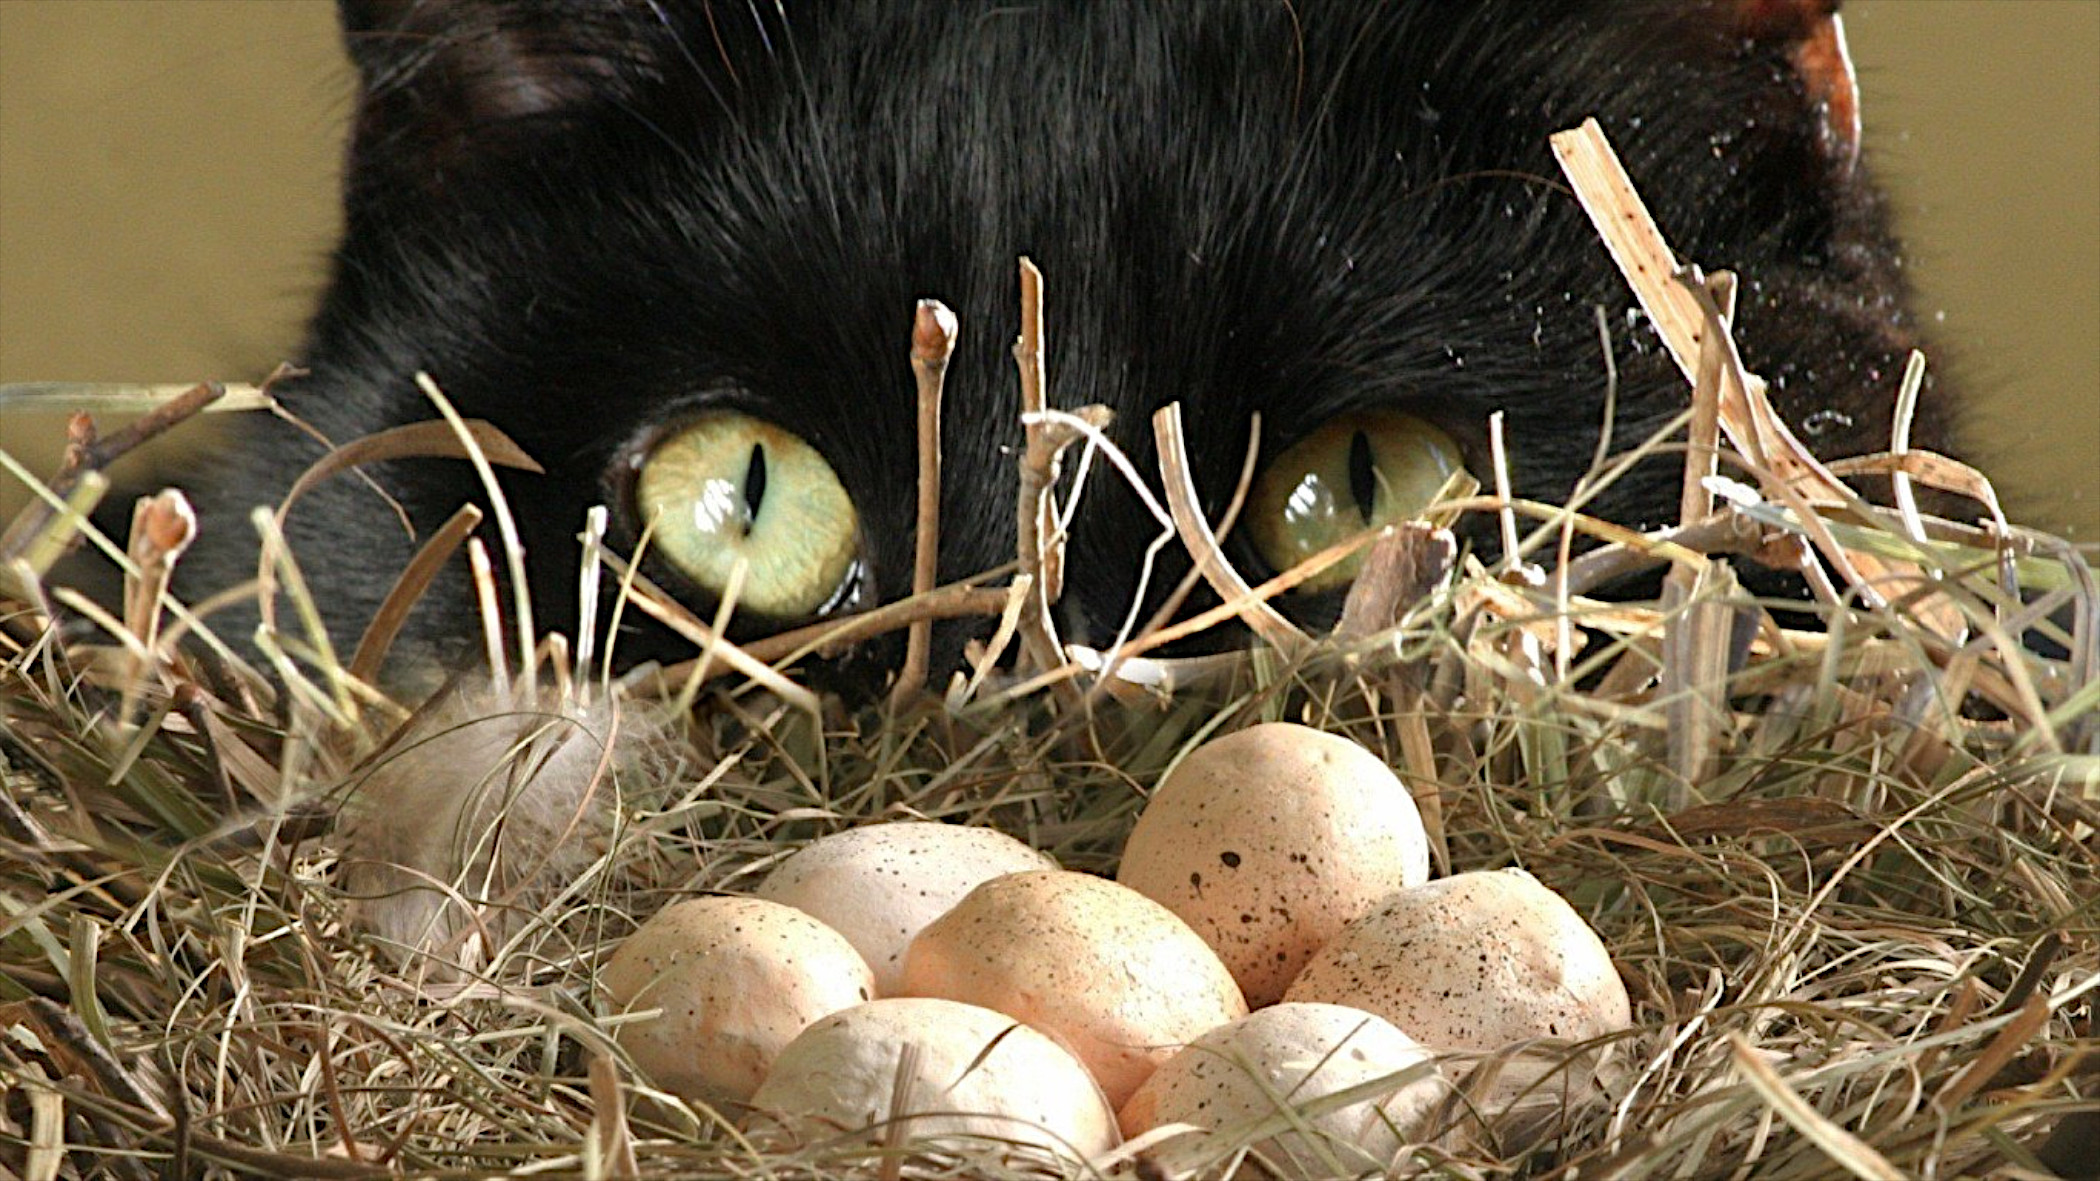 Free photo Black cat admiring quail eggs